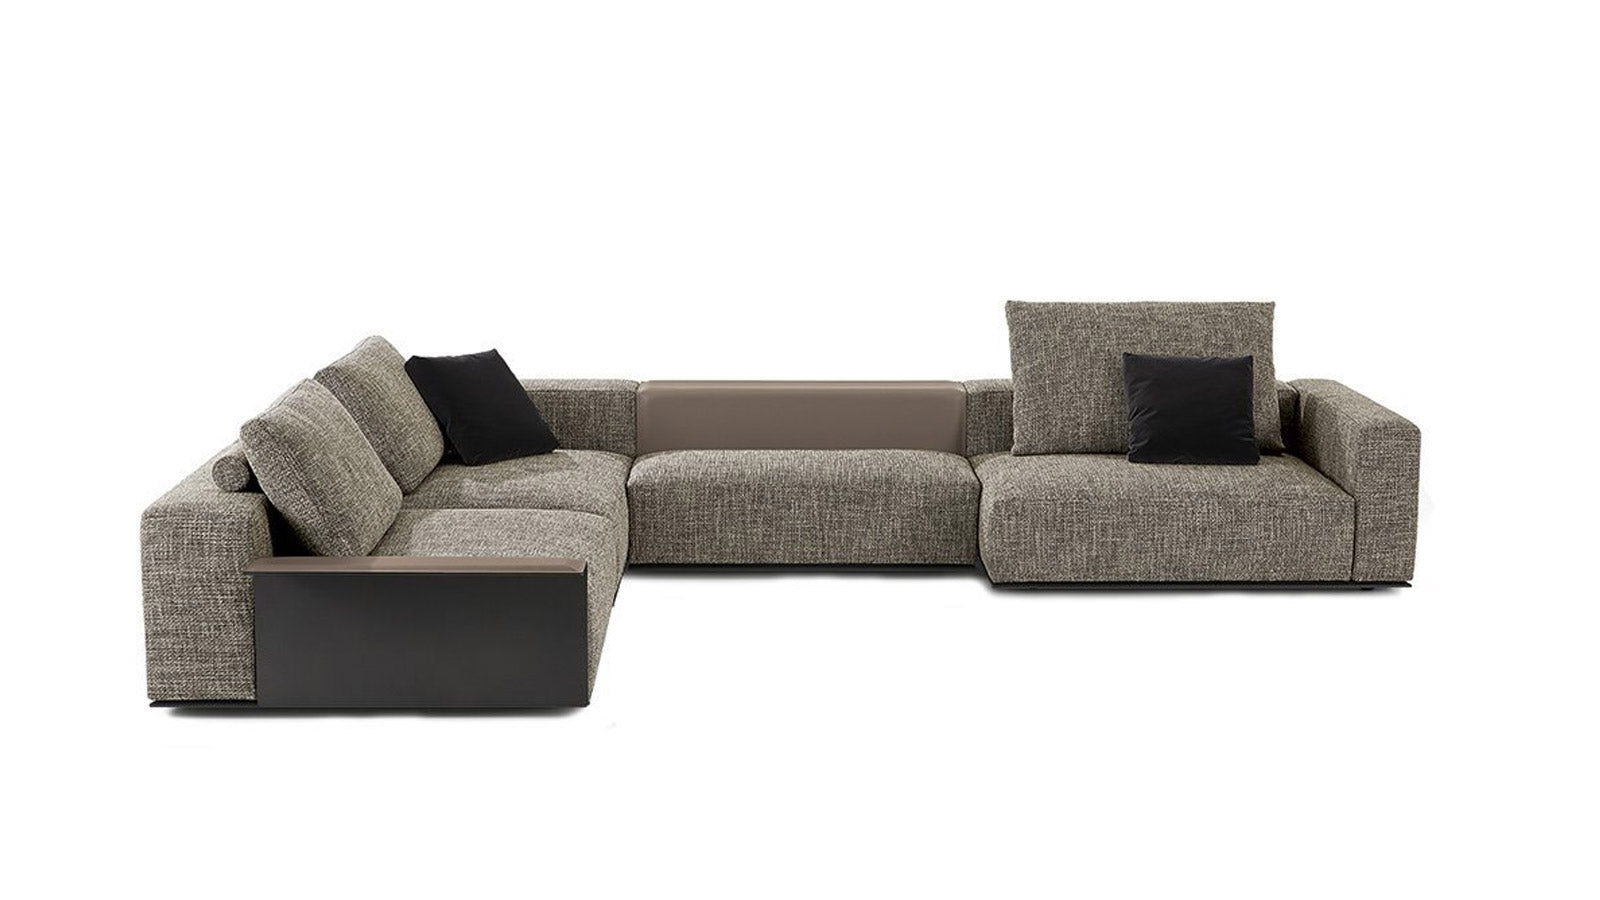 Poliform Westside Sofa Collection